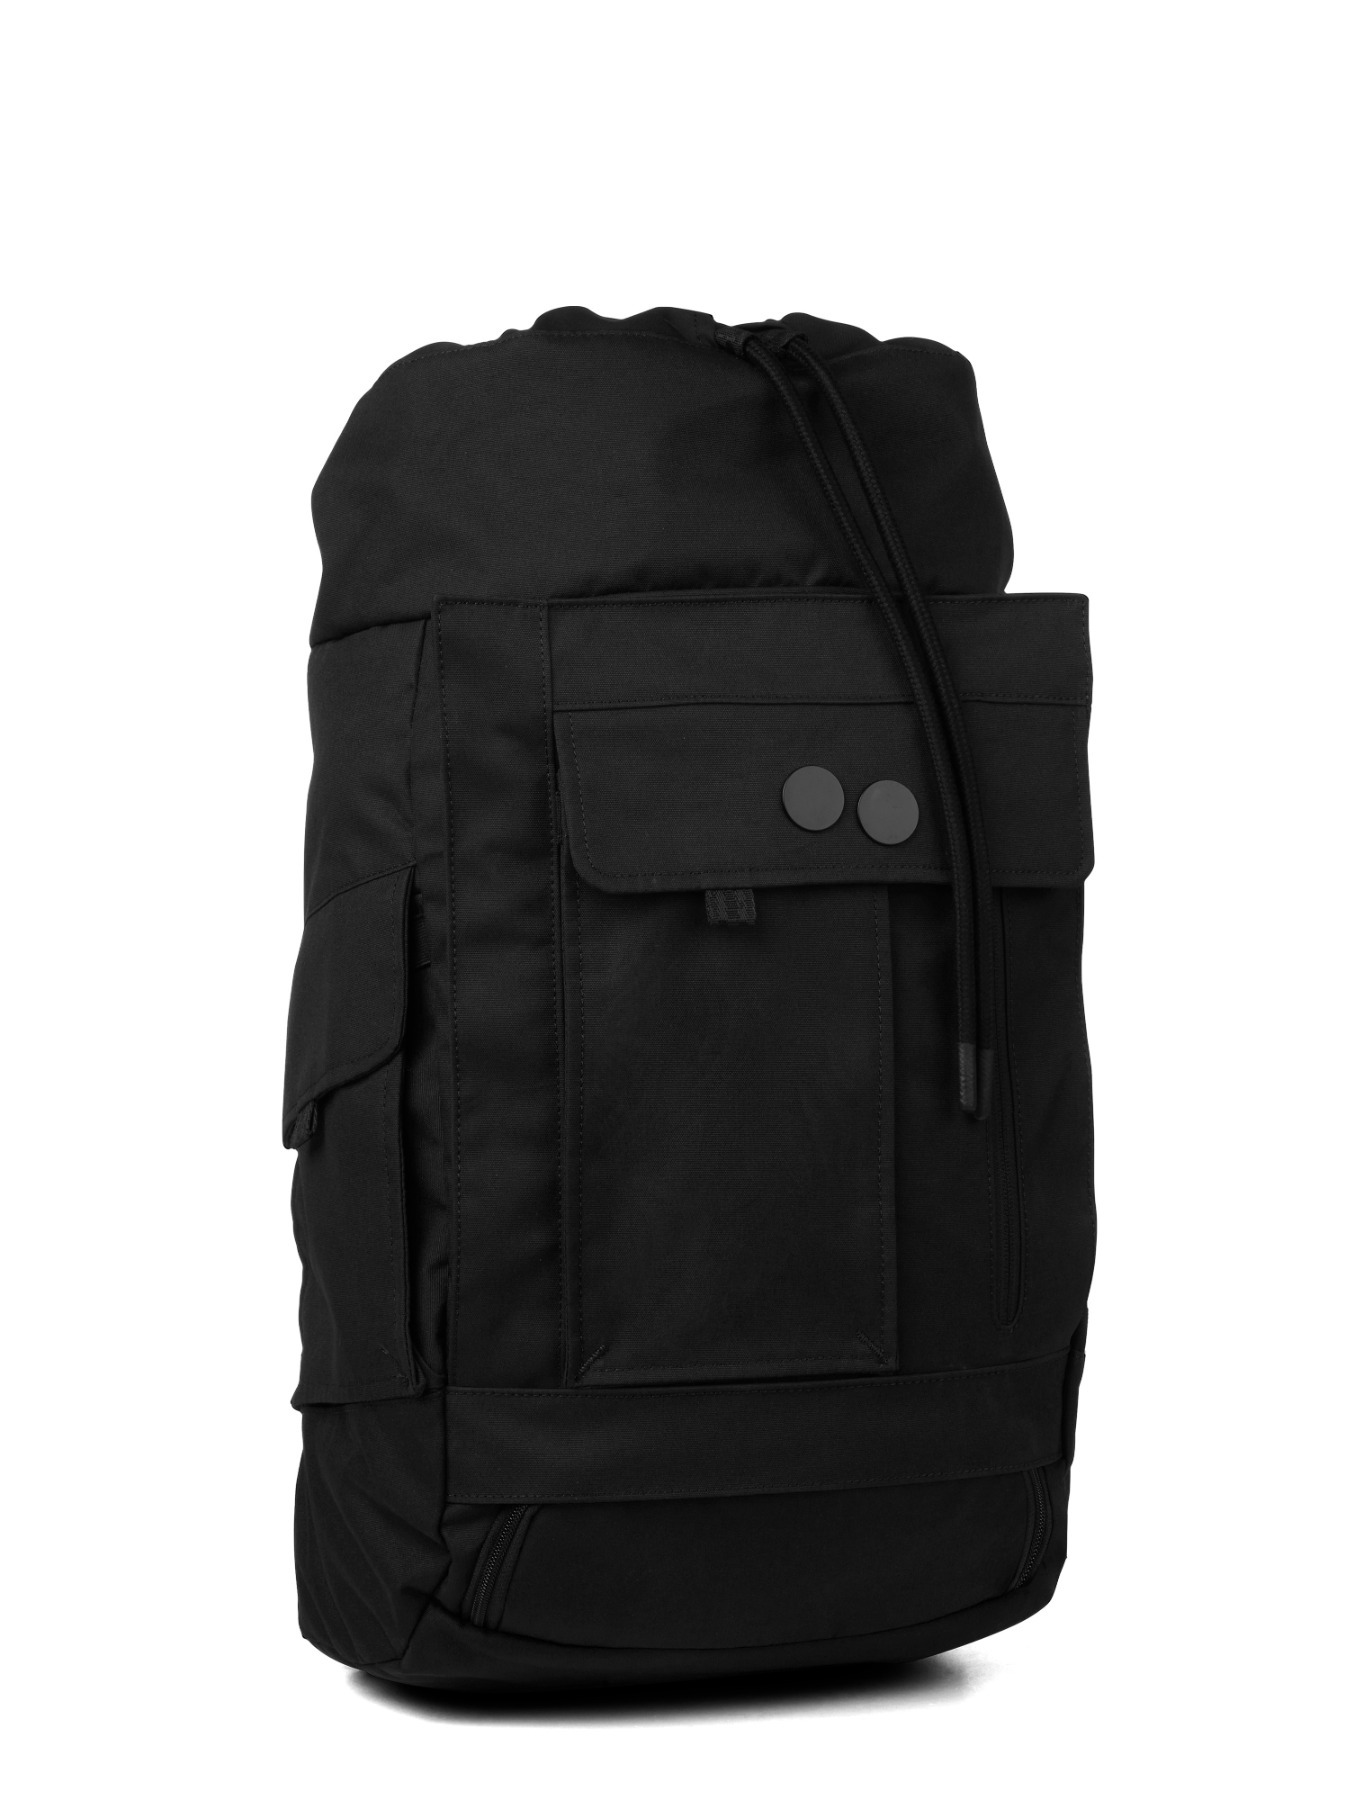 pinqponq Backpack BLOK medium - Construct Black 2